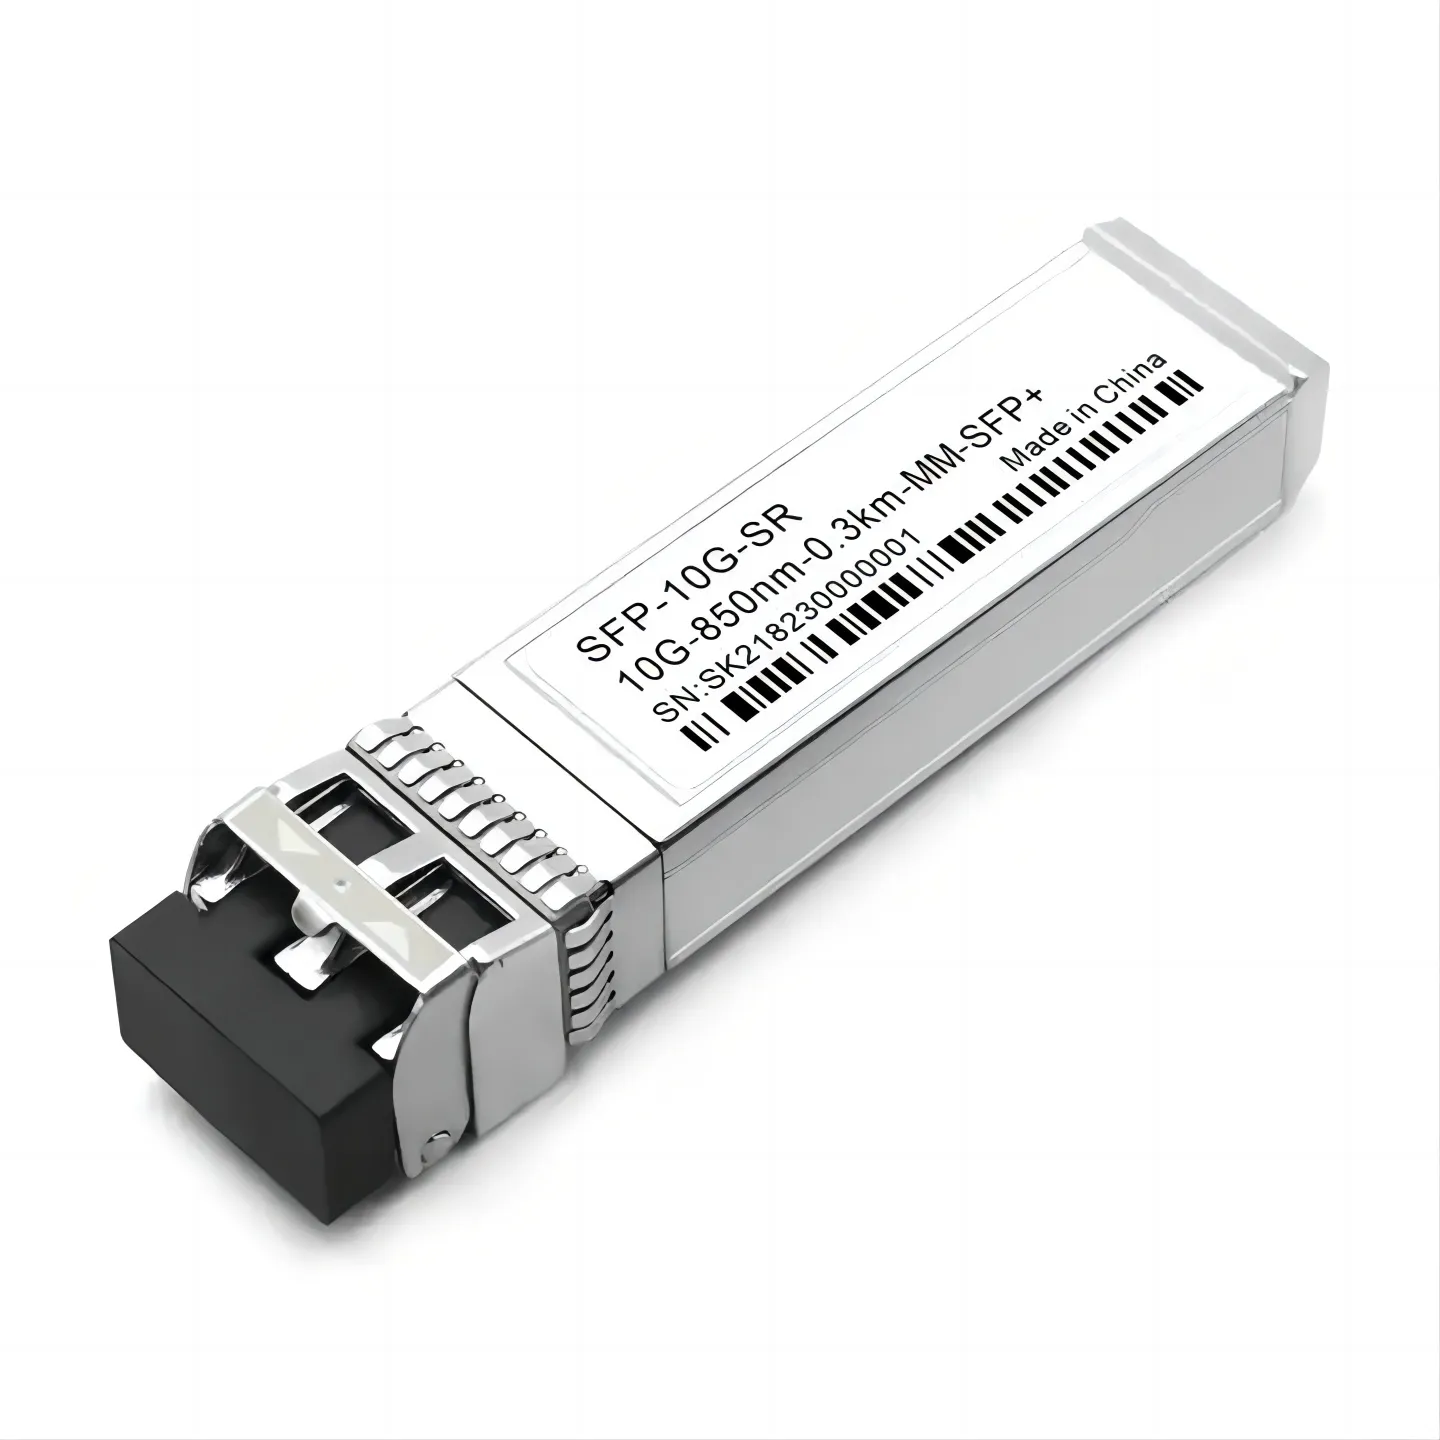 10G SFP SR dubleks 300m 850nm LC DDM 10GBASE-SR Multimode Multimode VCSEL 10GB SFP modülü optik alıcı-verici SFP-10G-SR